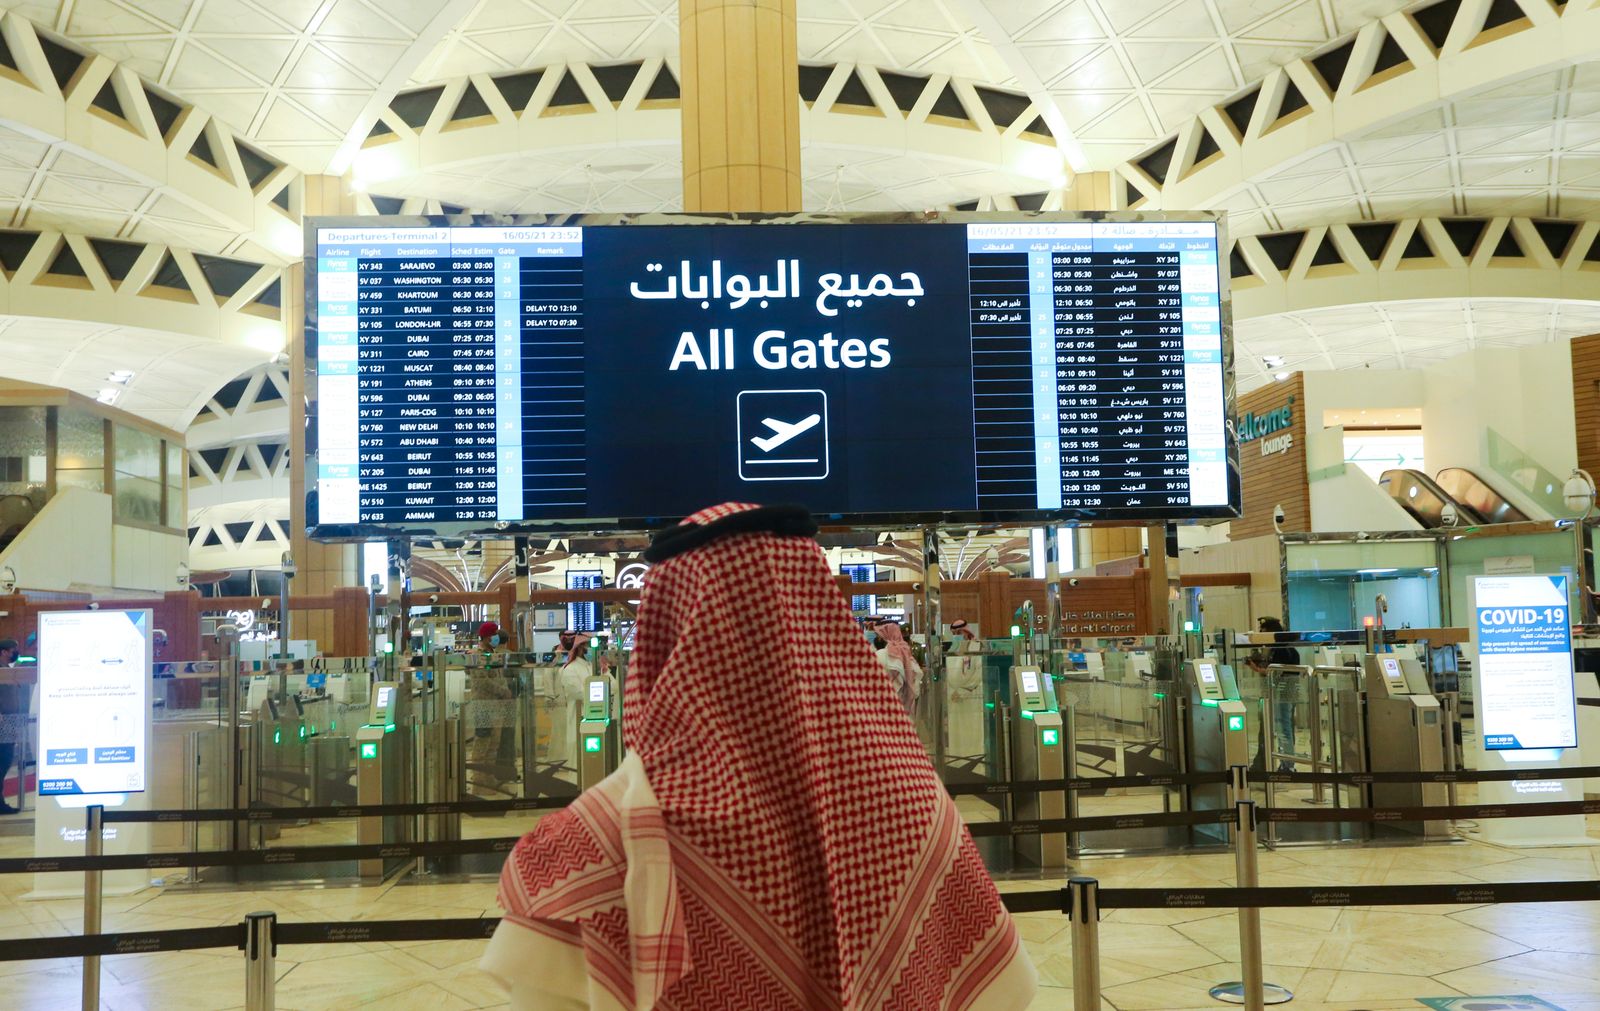 السعودية تخطط لبناء مطار ضخم تلبية لطموحاتها السياحية" width="252" height="168" loading="lazy